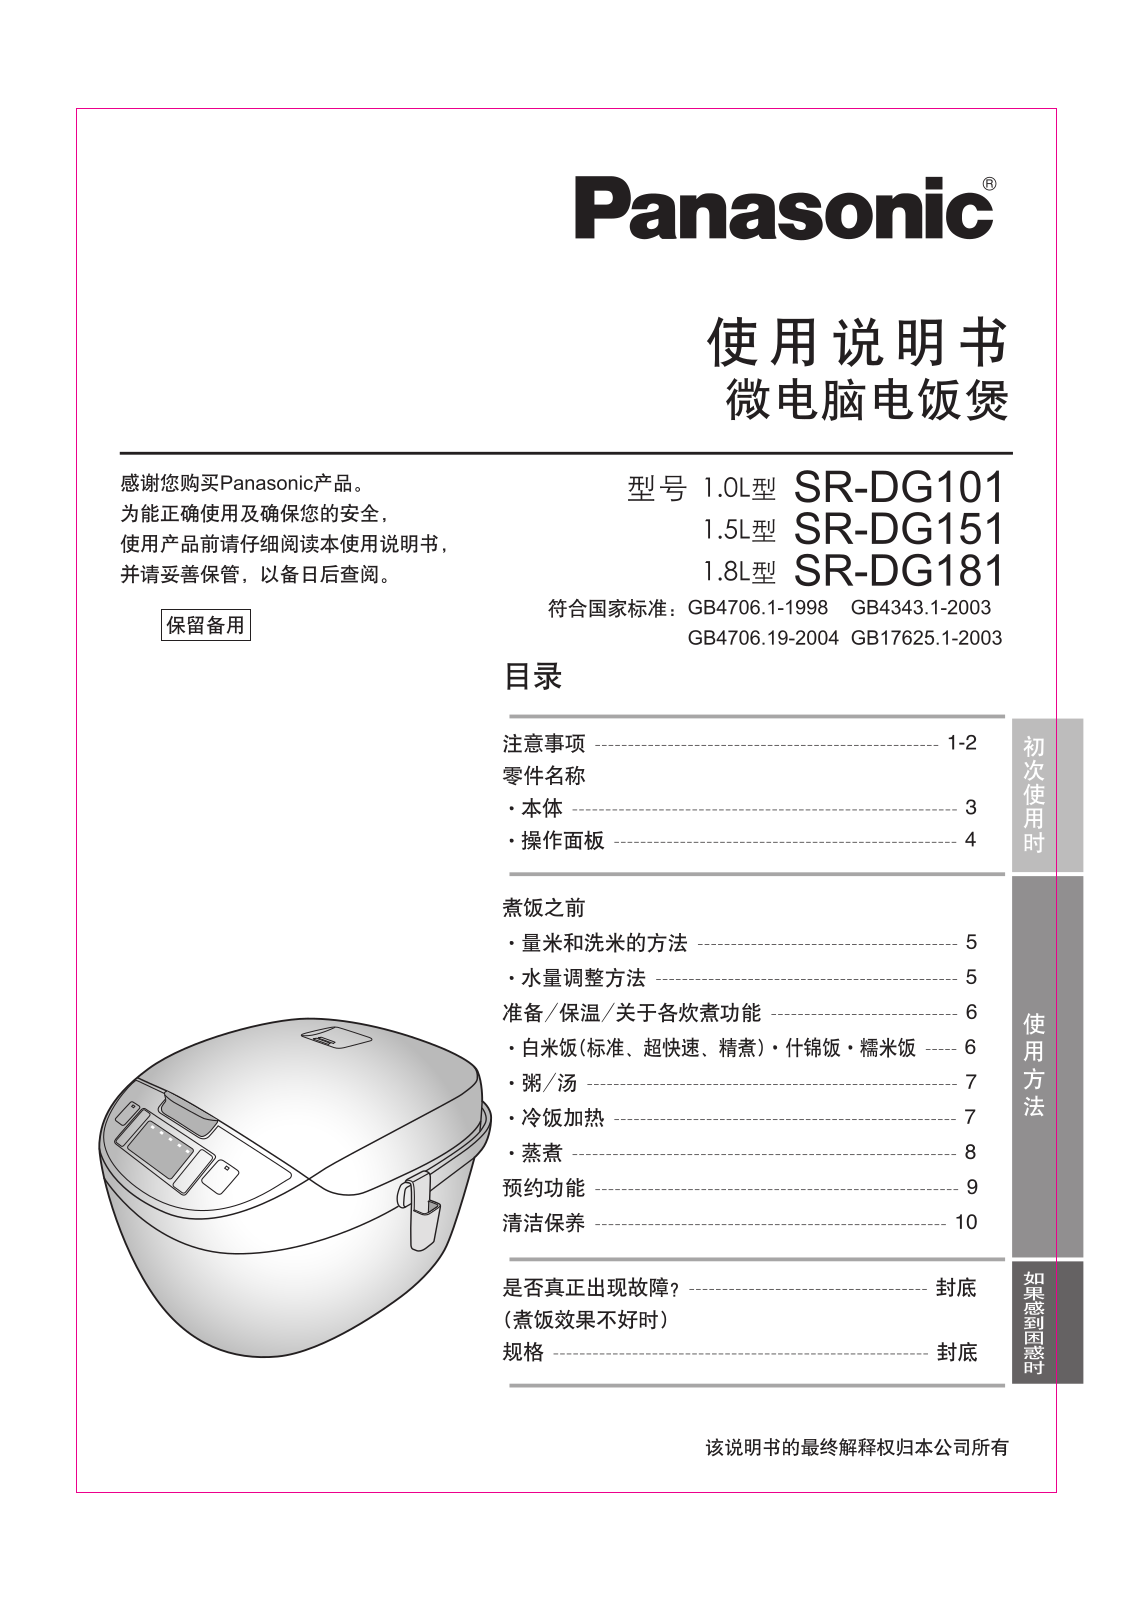 Panasonic SR-DG101, SR-DG151, SR-DG181 User Manual